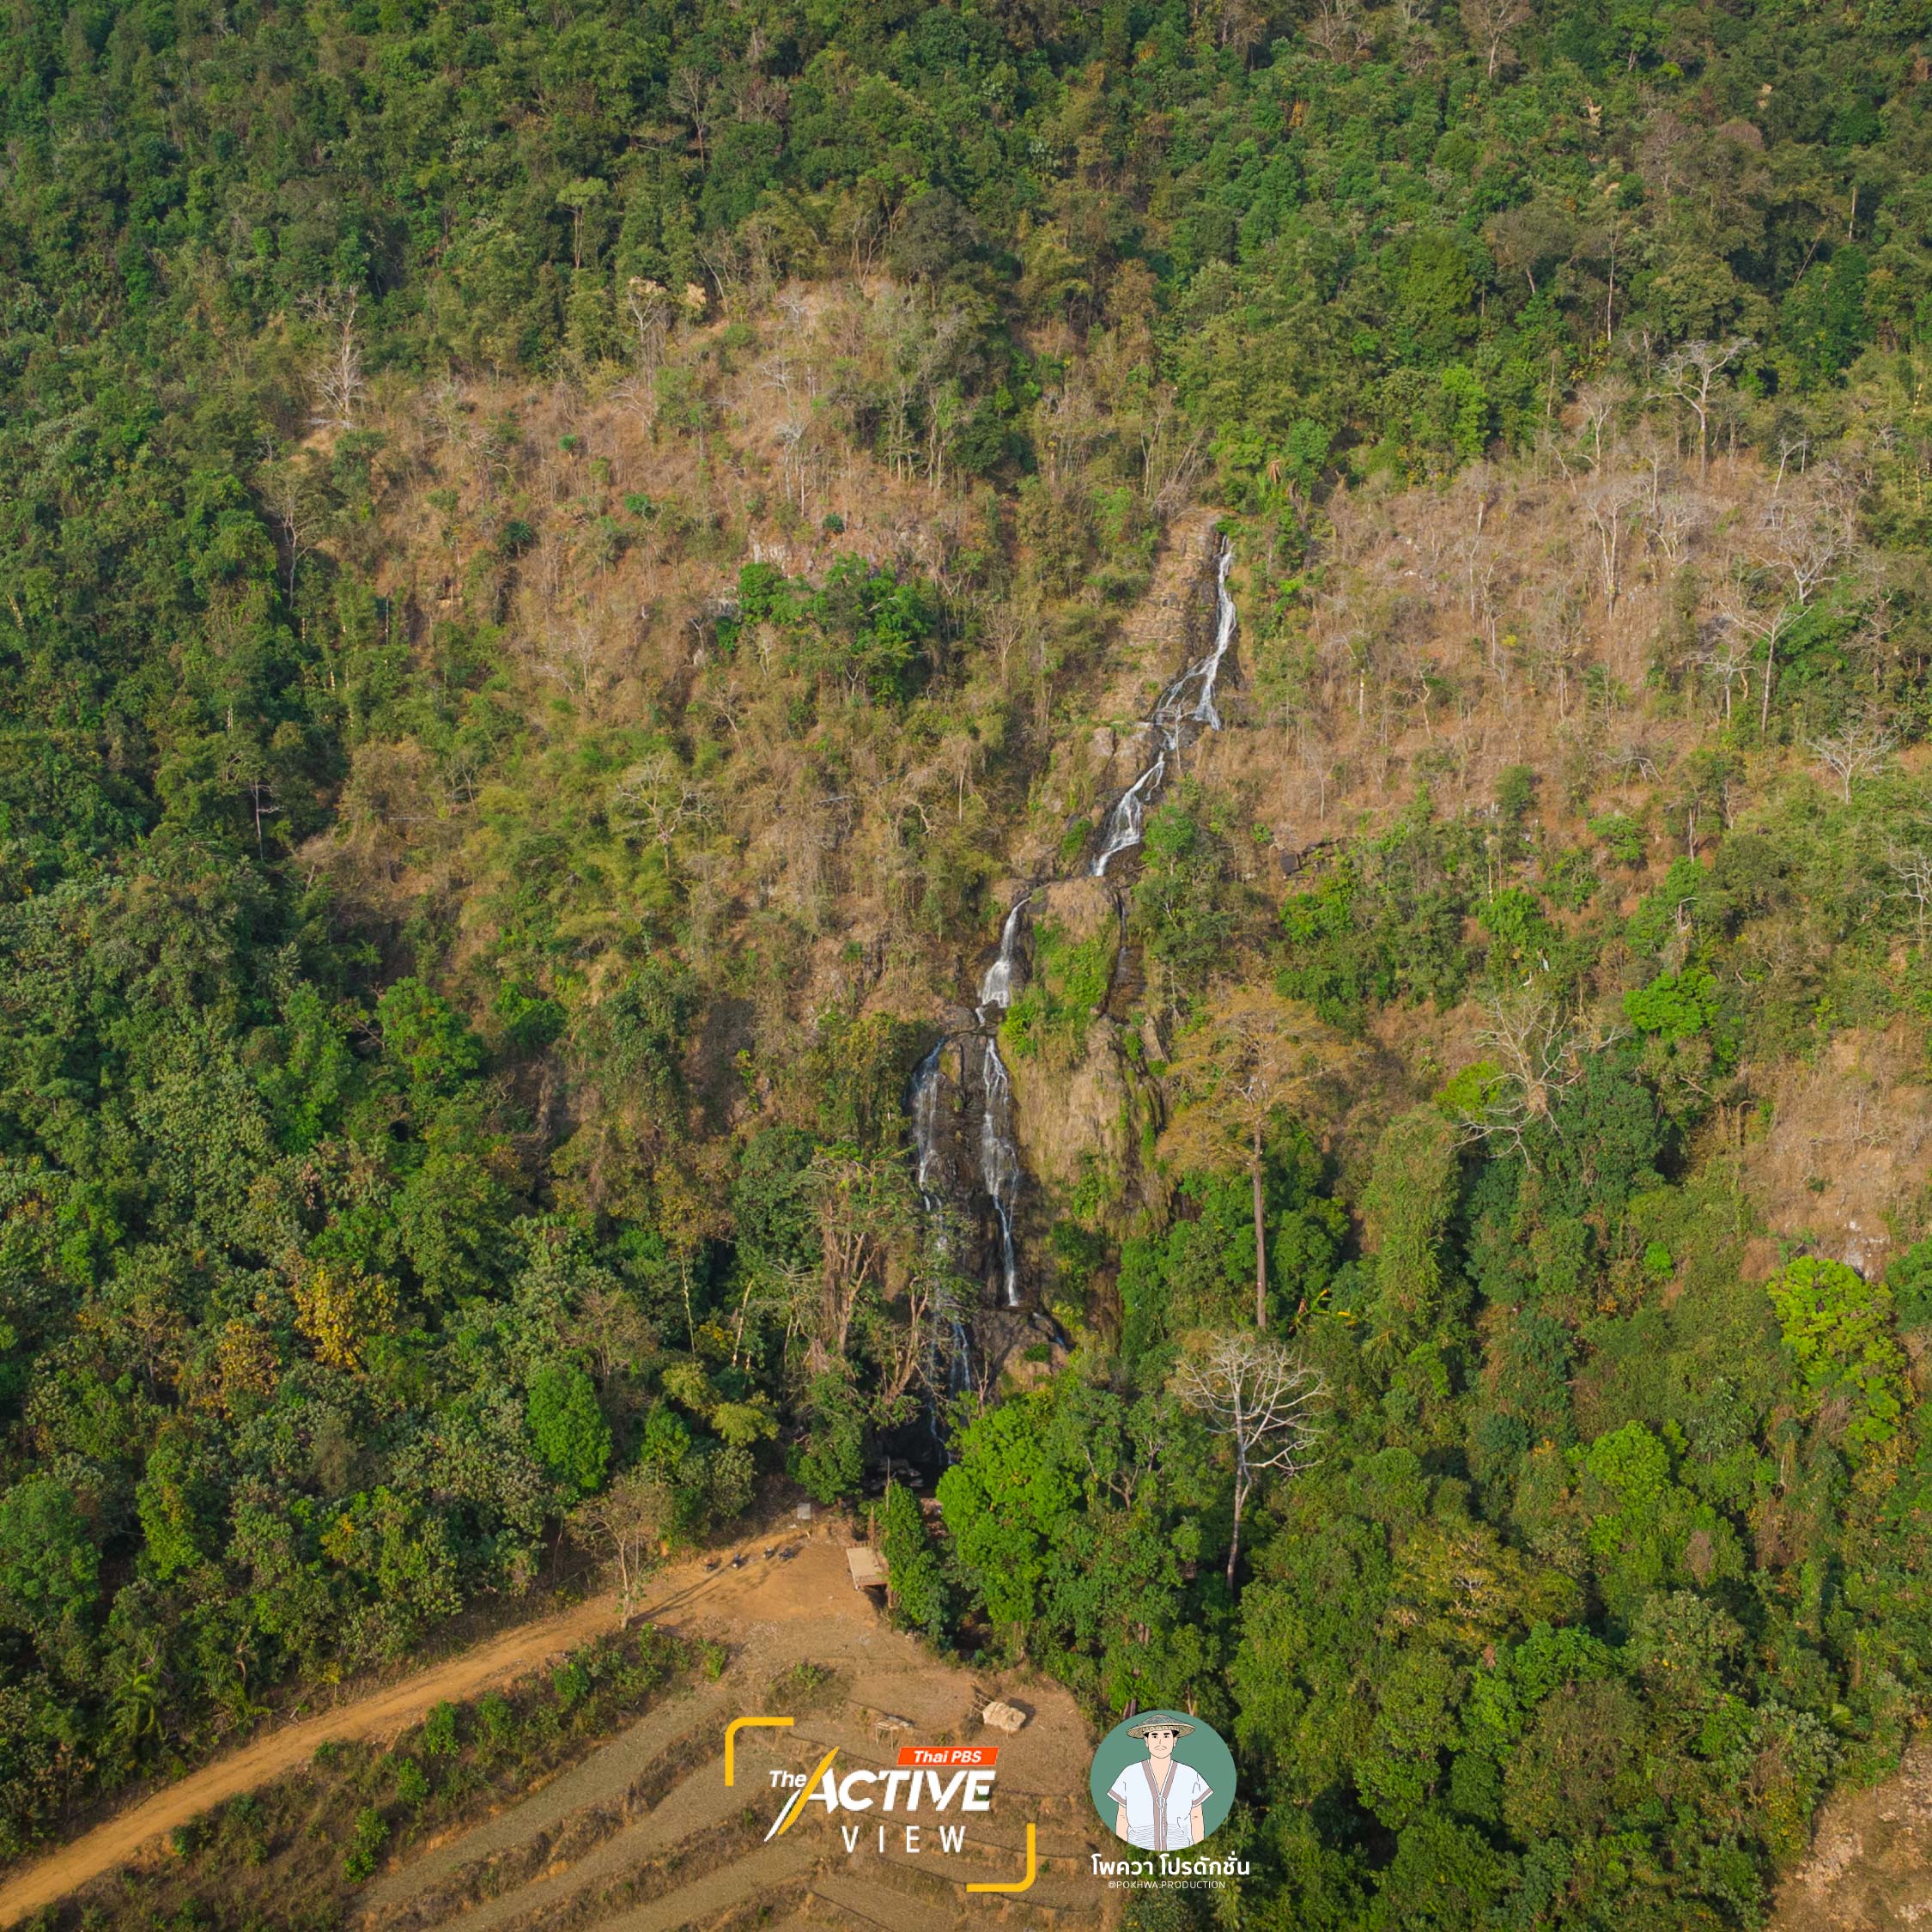 พื้นที่ป่าในชุมชนบ้านแม่ปอคี แบ่งออกเป็นป่า 4 ประเภท คือ พื้นที่ป่าตามความเชื่อ, ป่าอนุรักษ์ ซึ่งเป็นป่าต้นน้ำ, ป่าใช้ประโยชน์ - ป่าชุมชน, พื้นที่ป่าตามโครงการของรัฐ  "น้ำตกแม่ปอคี" คือหนึ่งในพื้นที่ป่าความเชื่อ หรือพื้นที่จิตวิญญาณที่ประกอบพิธีกรรมขอพร ขอขมา รวมถึงการทำนายอนาคตชุมชน